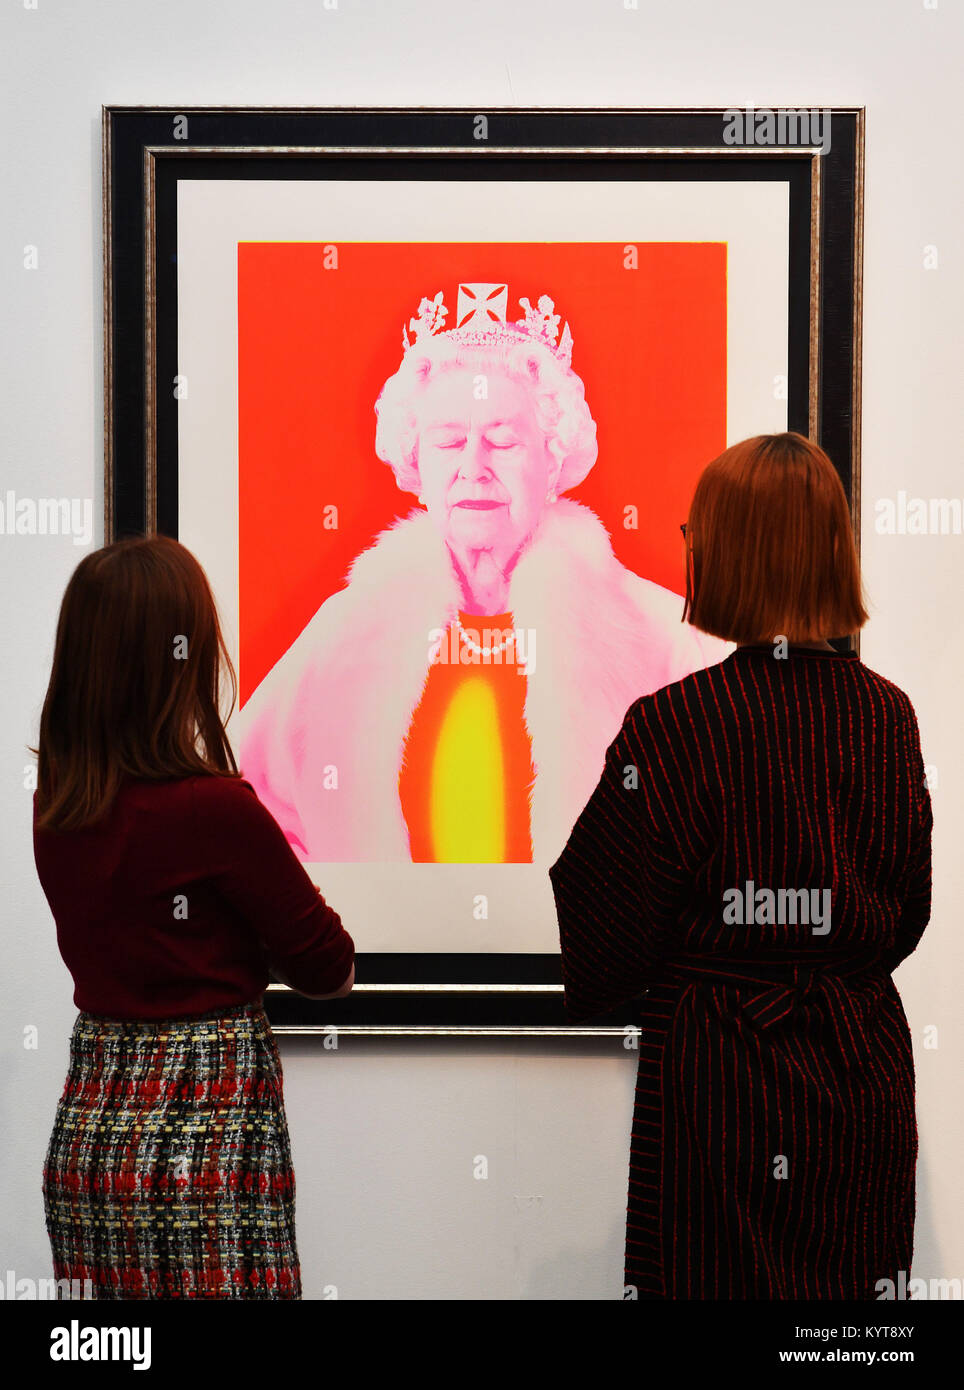 Deux femmes admirer un portrait pop-art de la Reine, au salon de la presse aperçu pour la London Art Fair à Islington, avant son ouverture au public demain. Banque D'Images